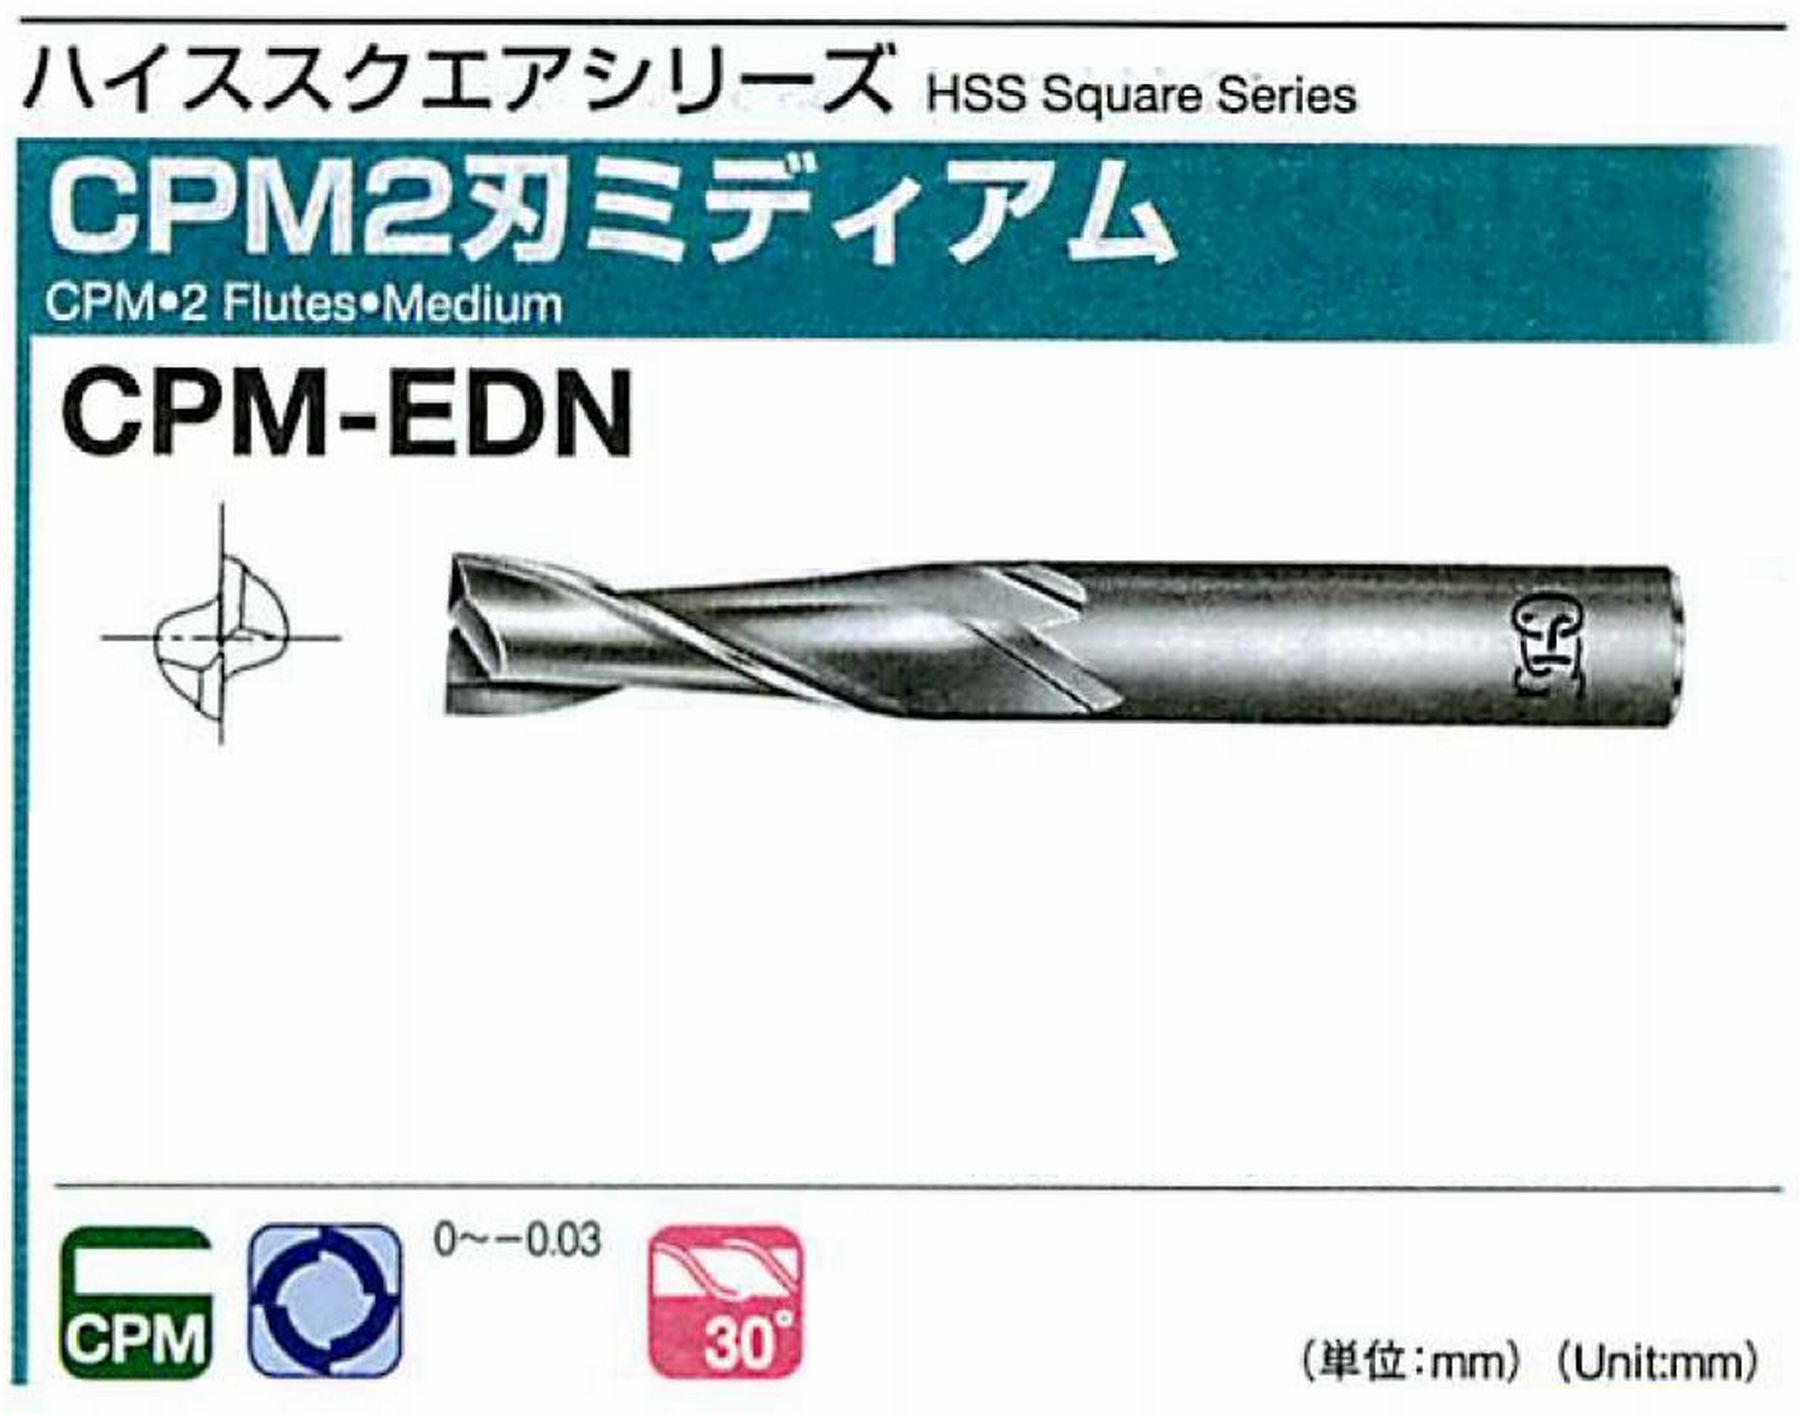 オーエスジー/OSG CPM2刃 ミディアム CPM-EDN 外径5.5 全長60 刃長15 シャンク径8mm